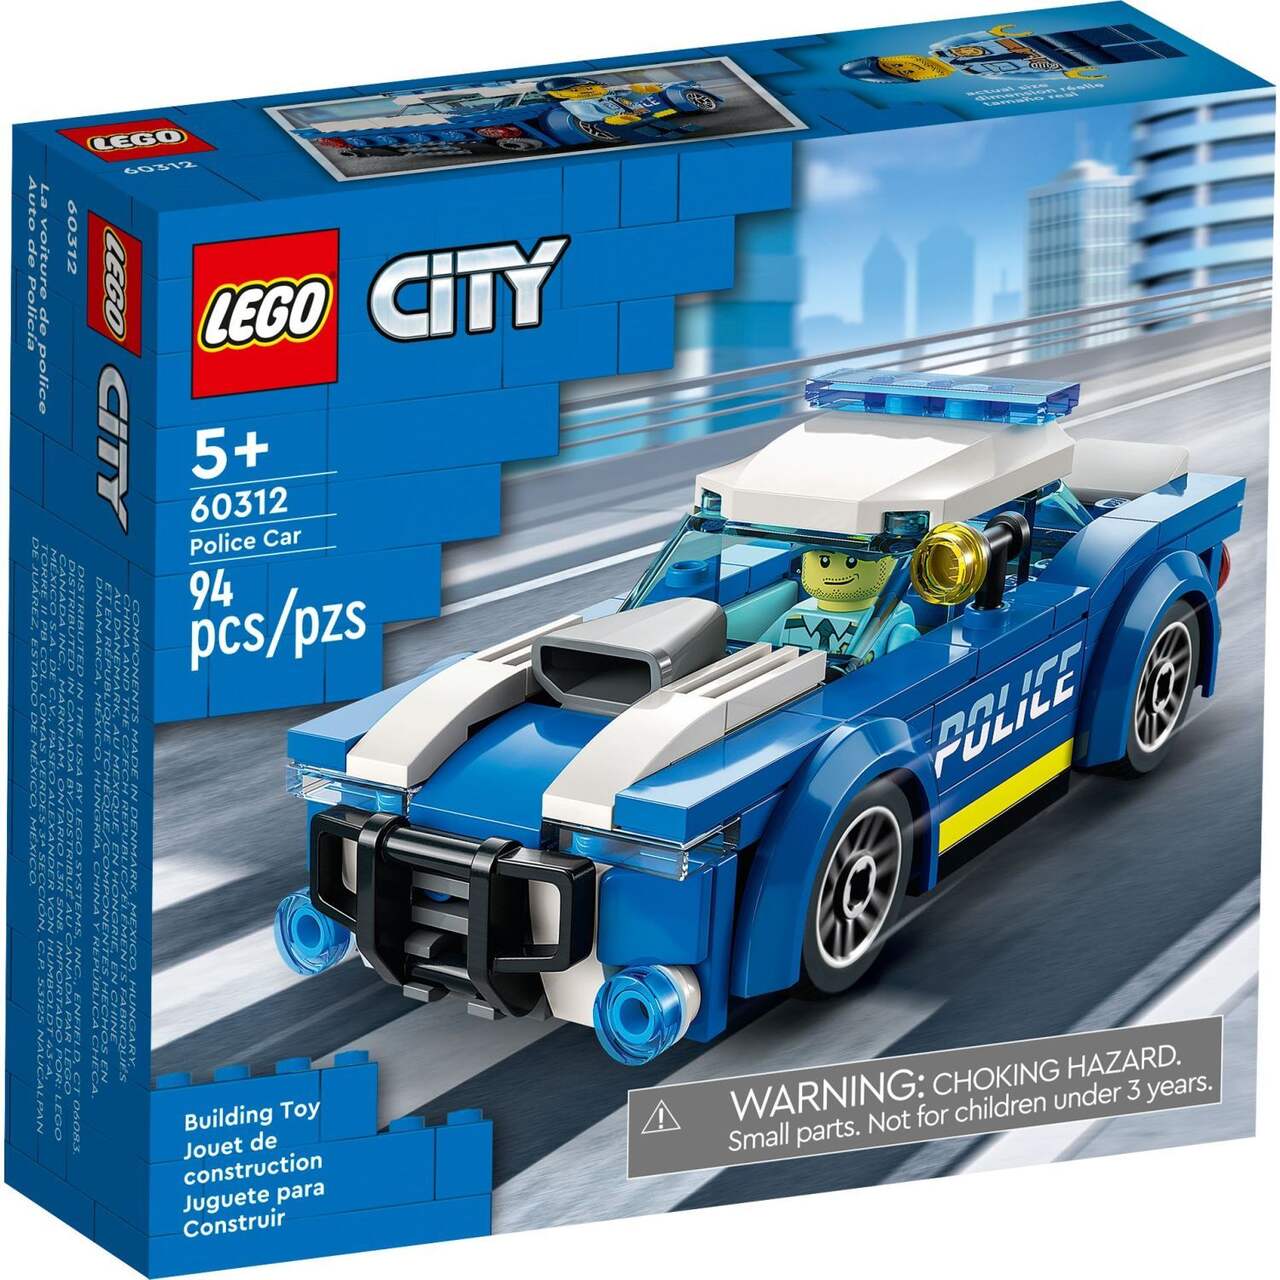 Cette nouvelle voiture Lego plaira aux mordus de Rapides et dangereux -  Guide Auto